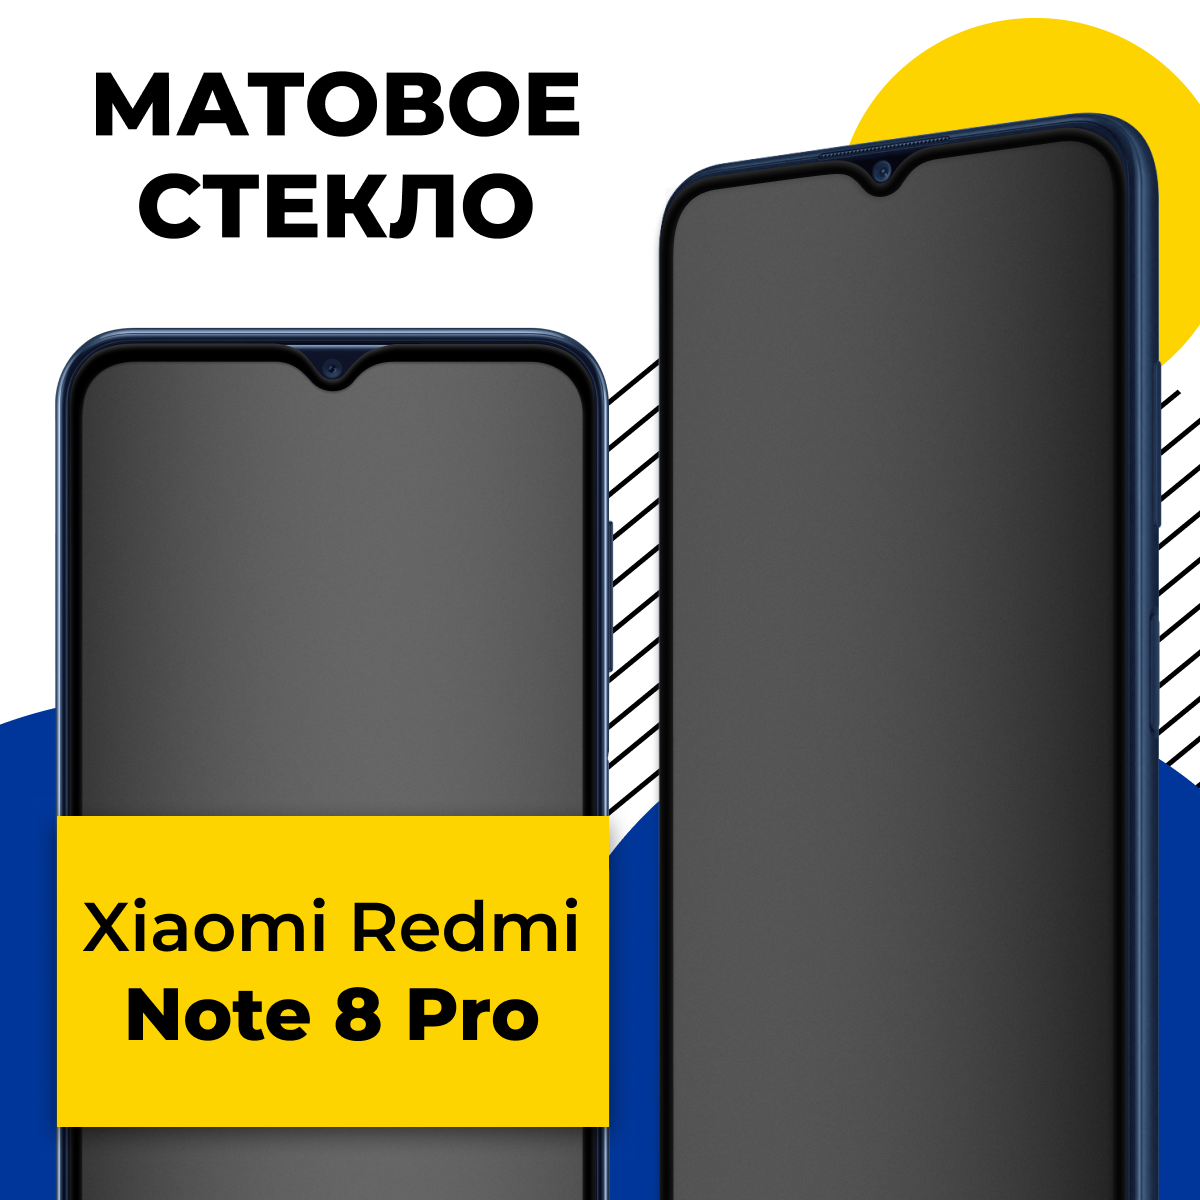 Матовое защитное стекло для телефона Xiaomi Redmi Note 8 Pro / Противоударное стекло 2.5D на смартфон Сяоми Редми Нот 8 Про с олеофобным покрытием